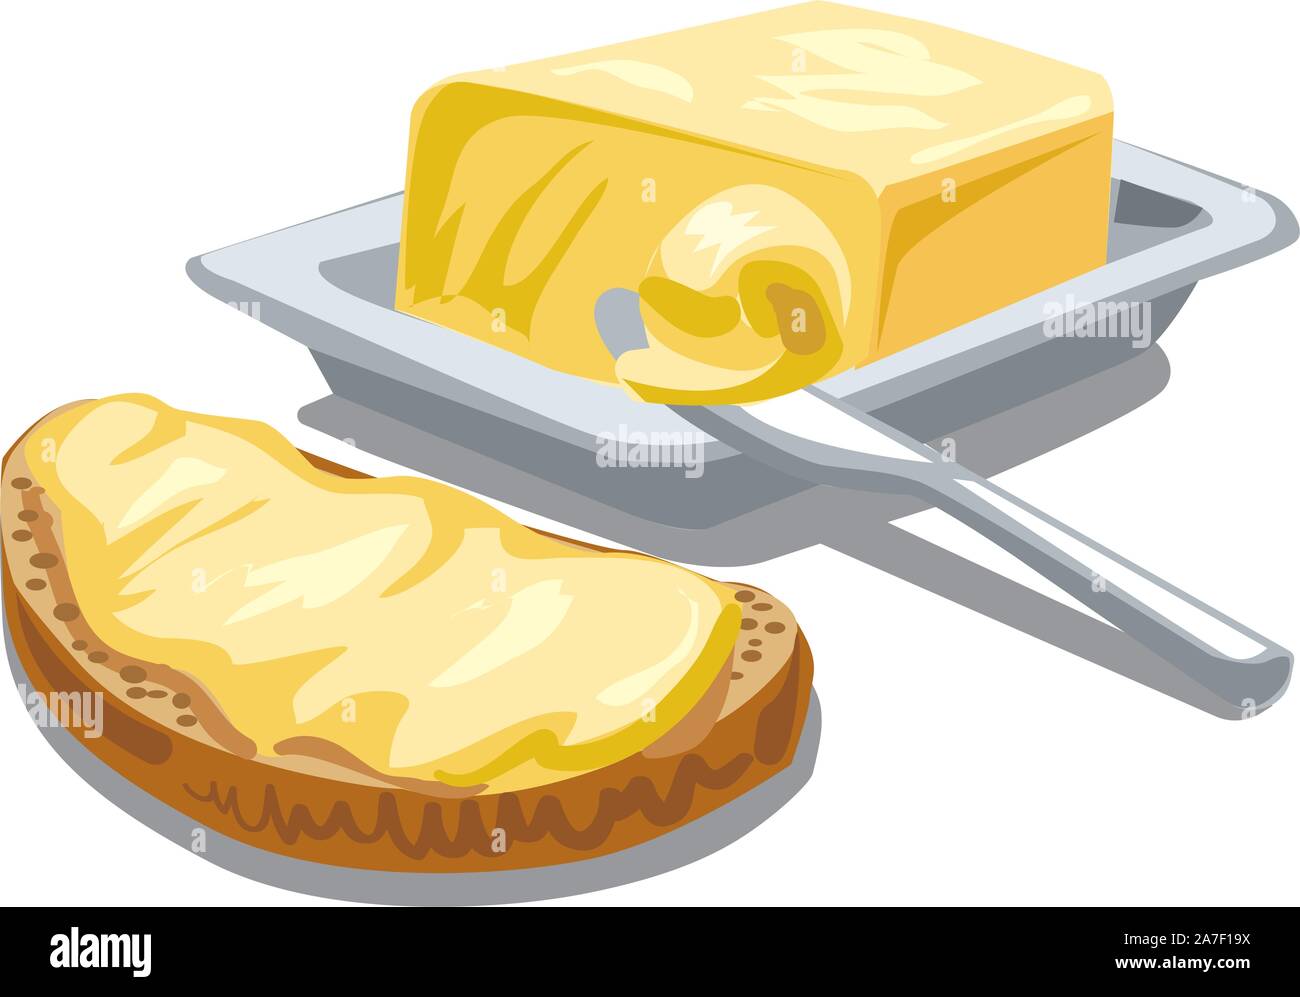 Illustrazione di diffusione di burro su fette di pane Illustrazione Vettoriale